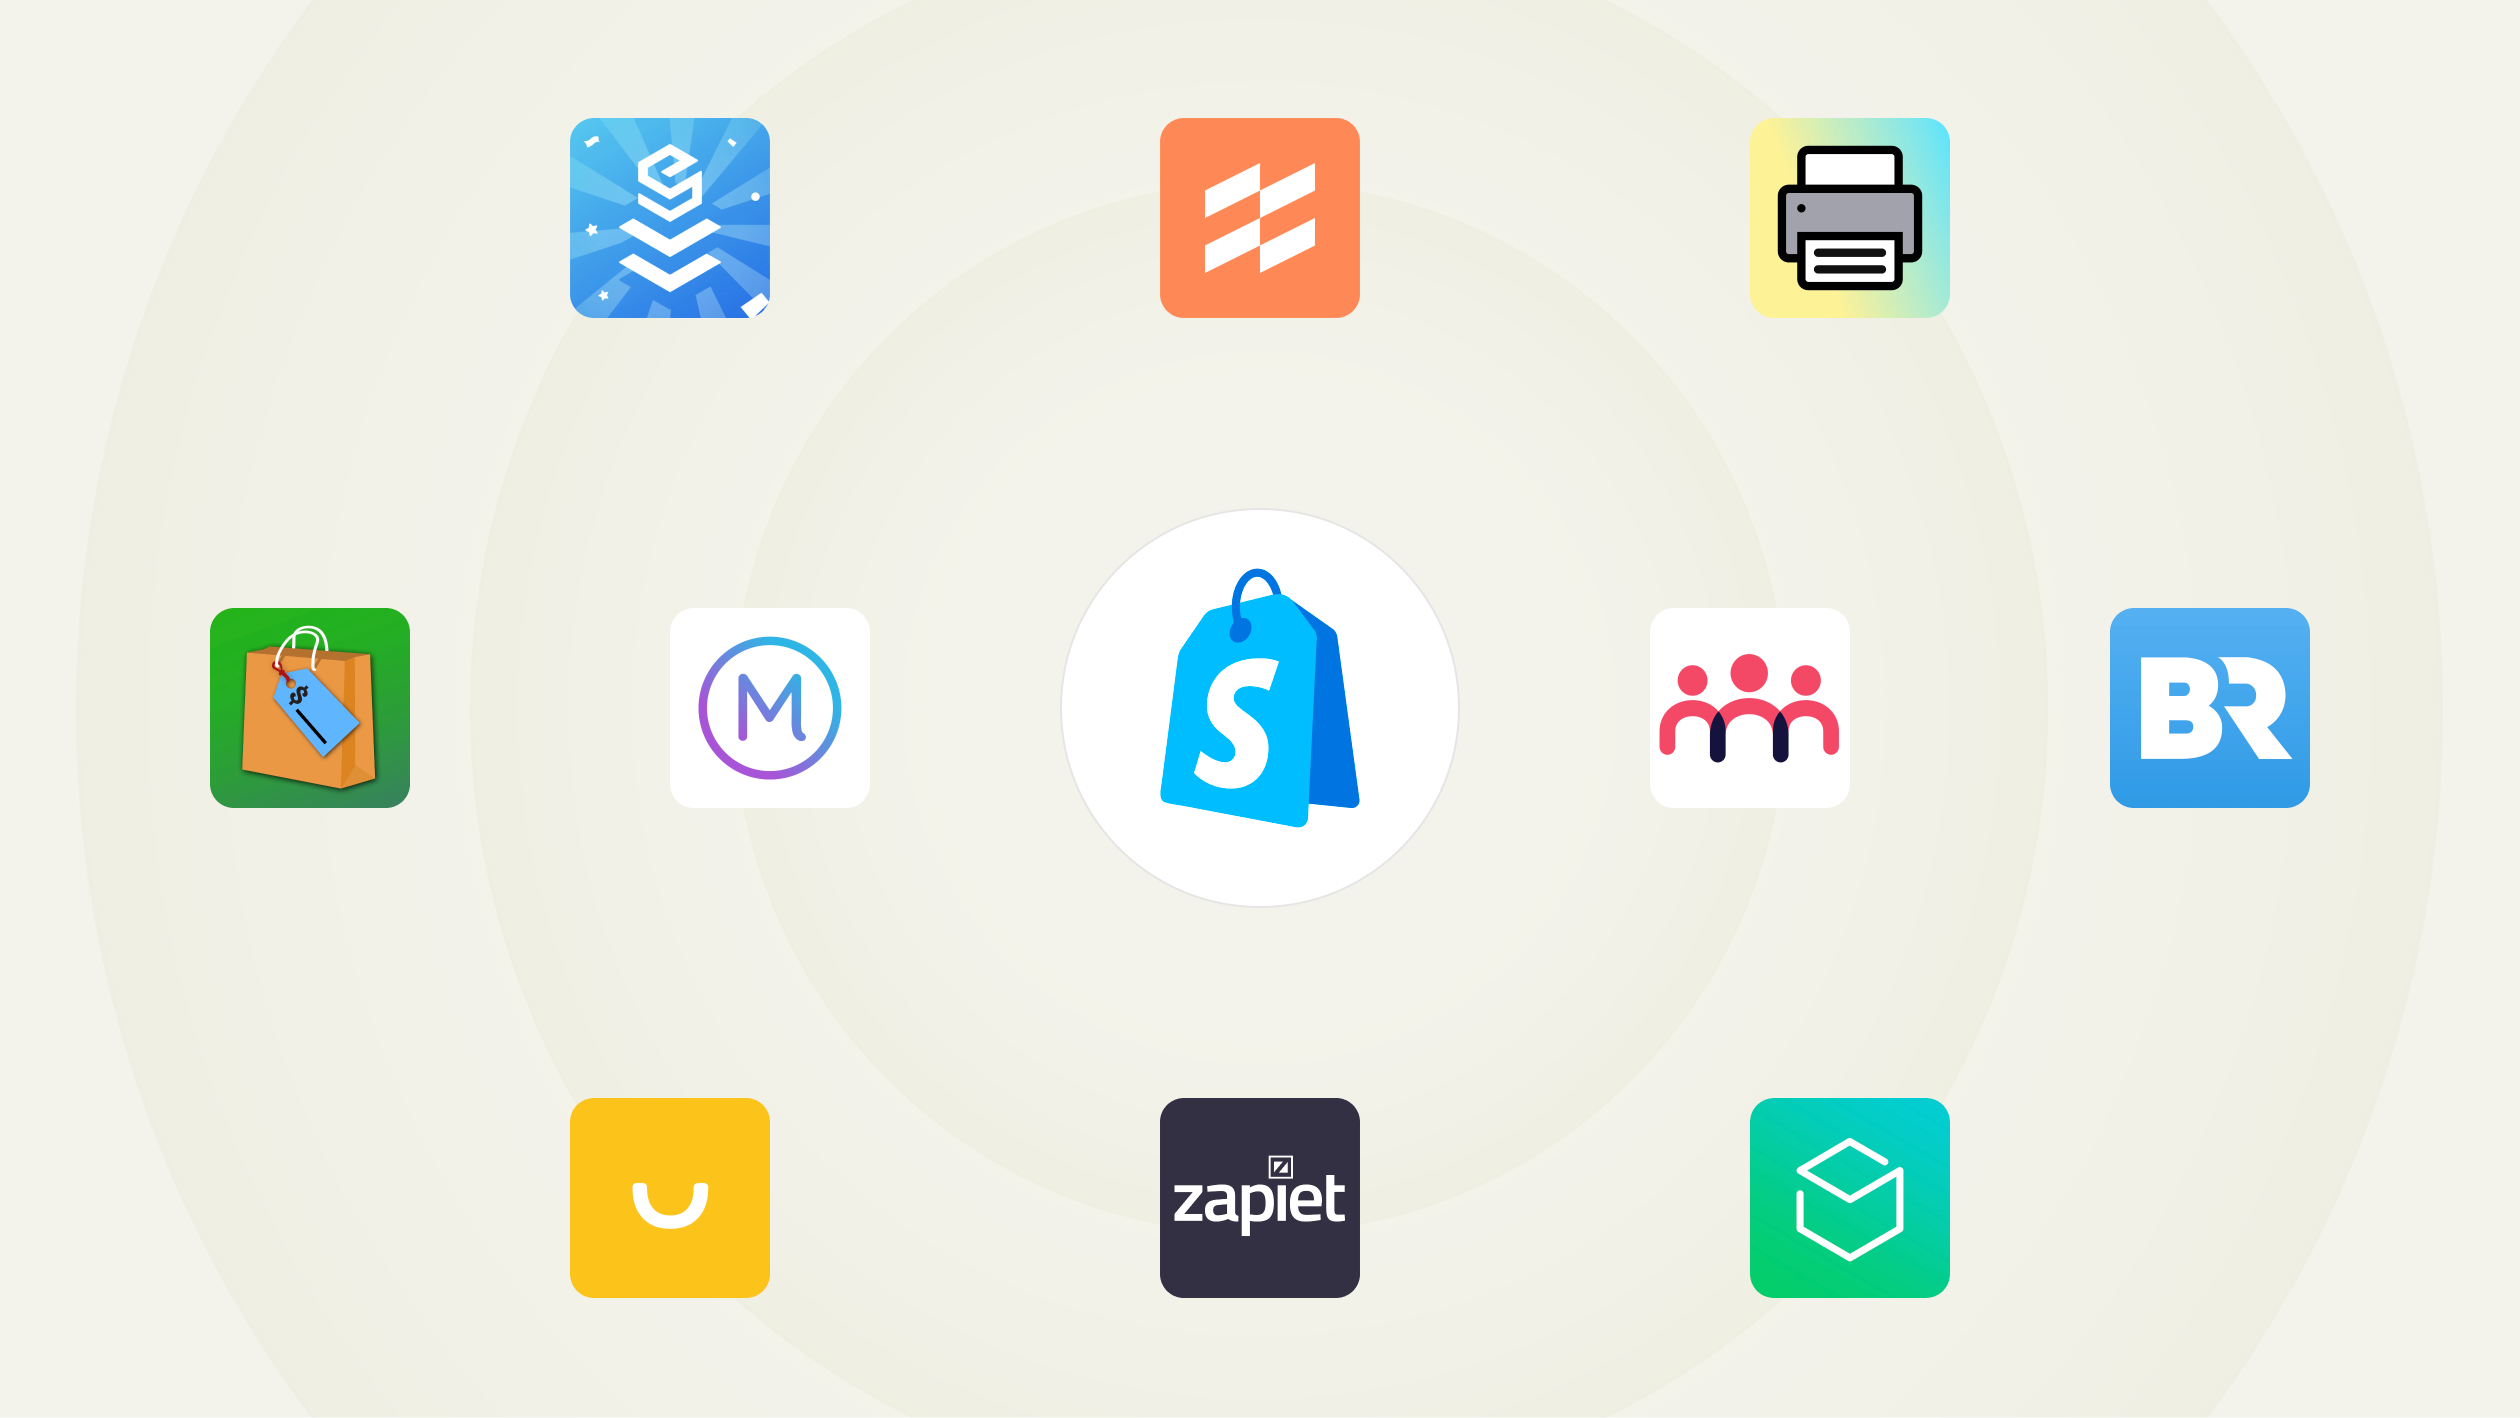 Eine Zusammenstellung von App-Symbolen. In der Mitte ist das Shopify POS-Logo zu sehen. Um das Logo herum befinden sich Symbole für verschiedene Apps: EasyTeam, Filljoy, Zapiet, Optizio, Stocky, Order Printer, Smile, Better Reports, Marsello und Endear.